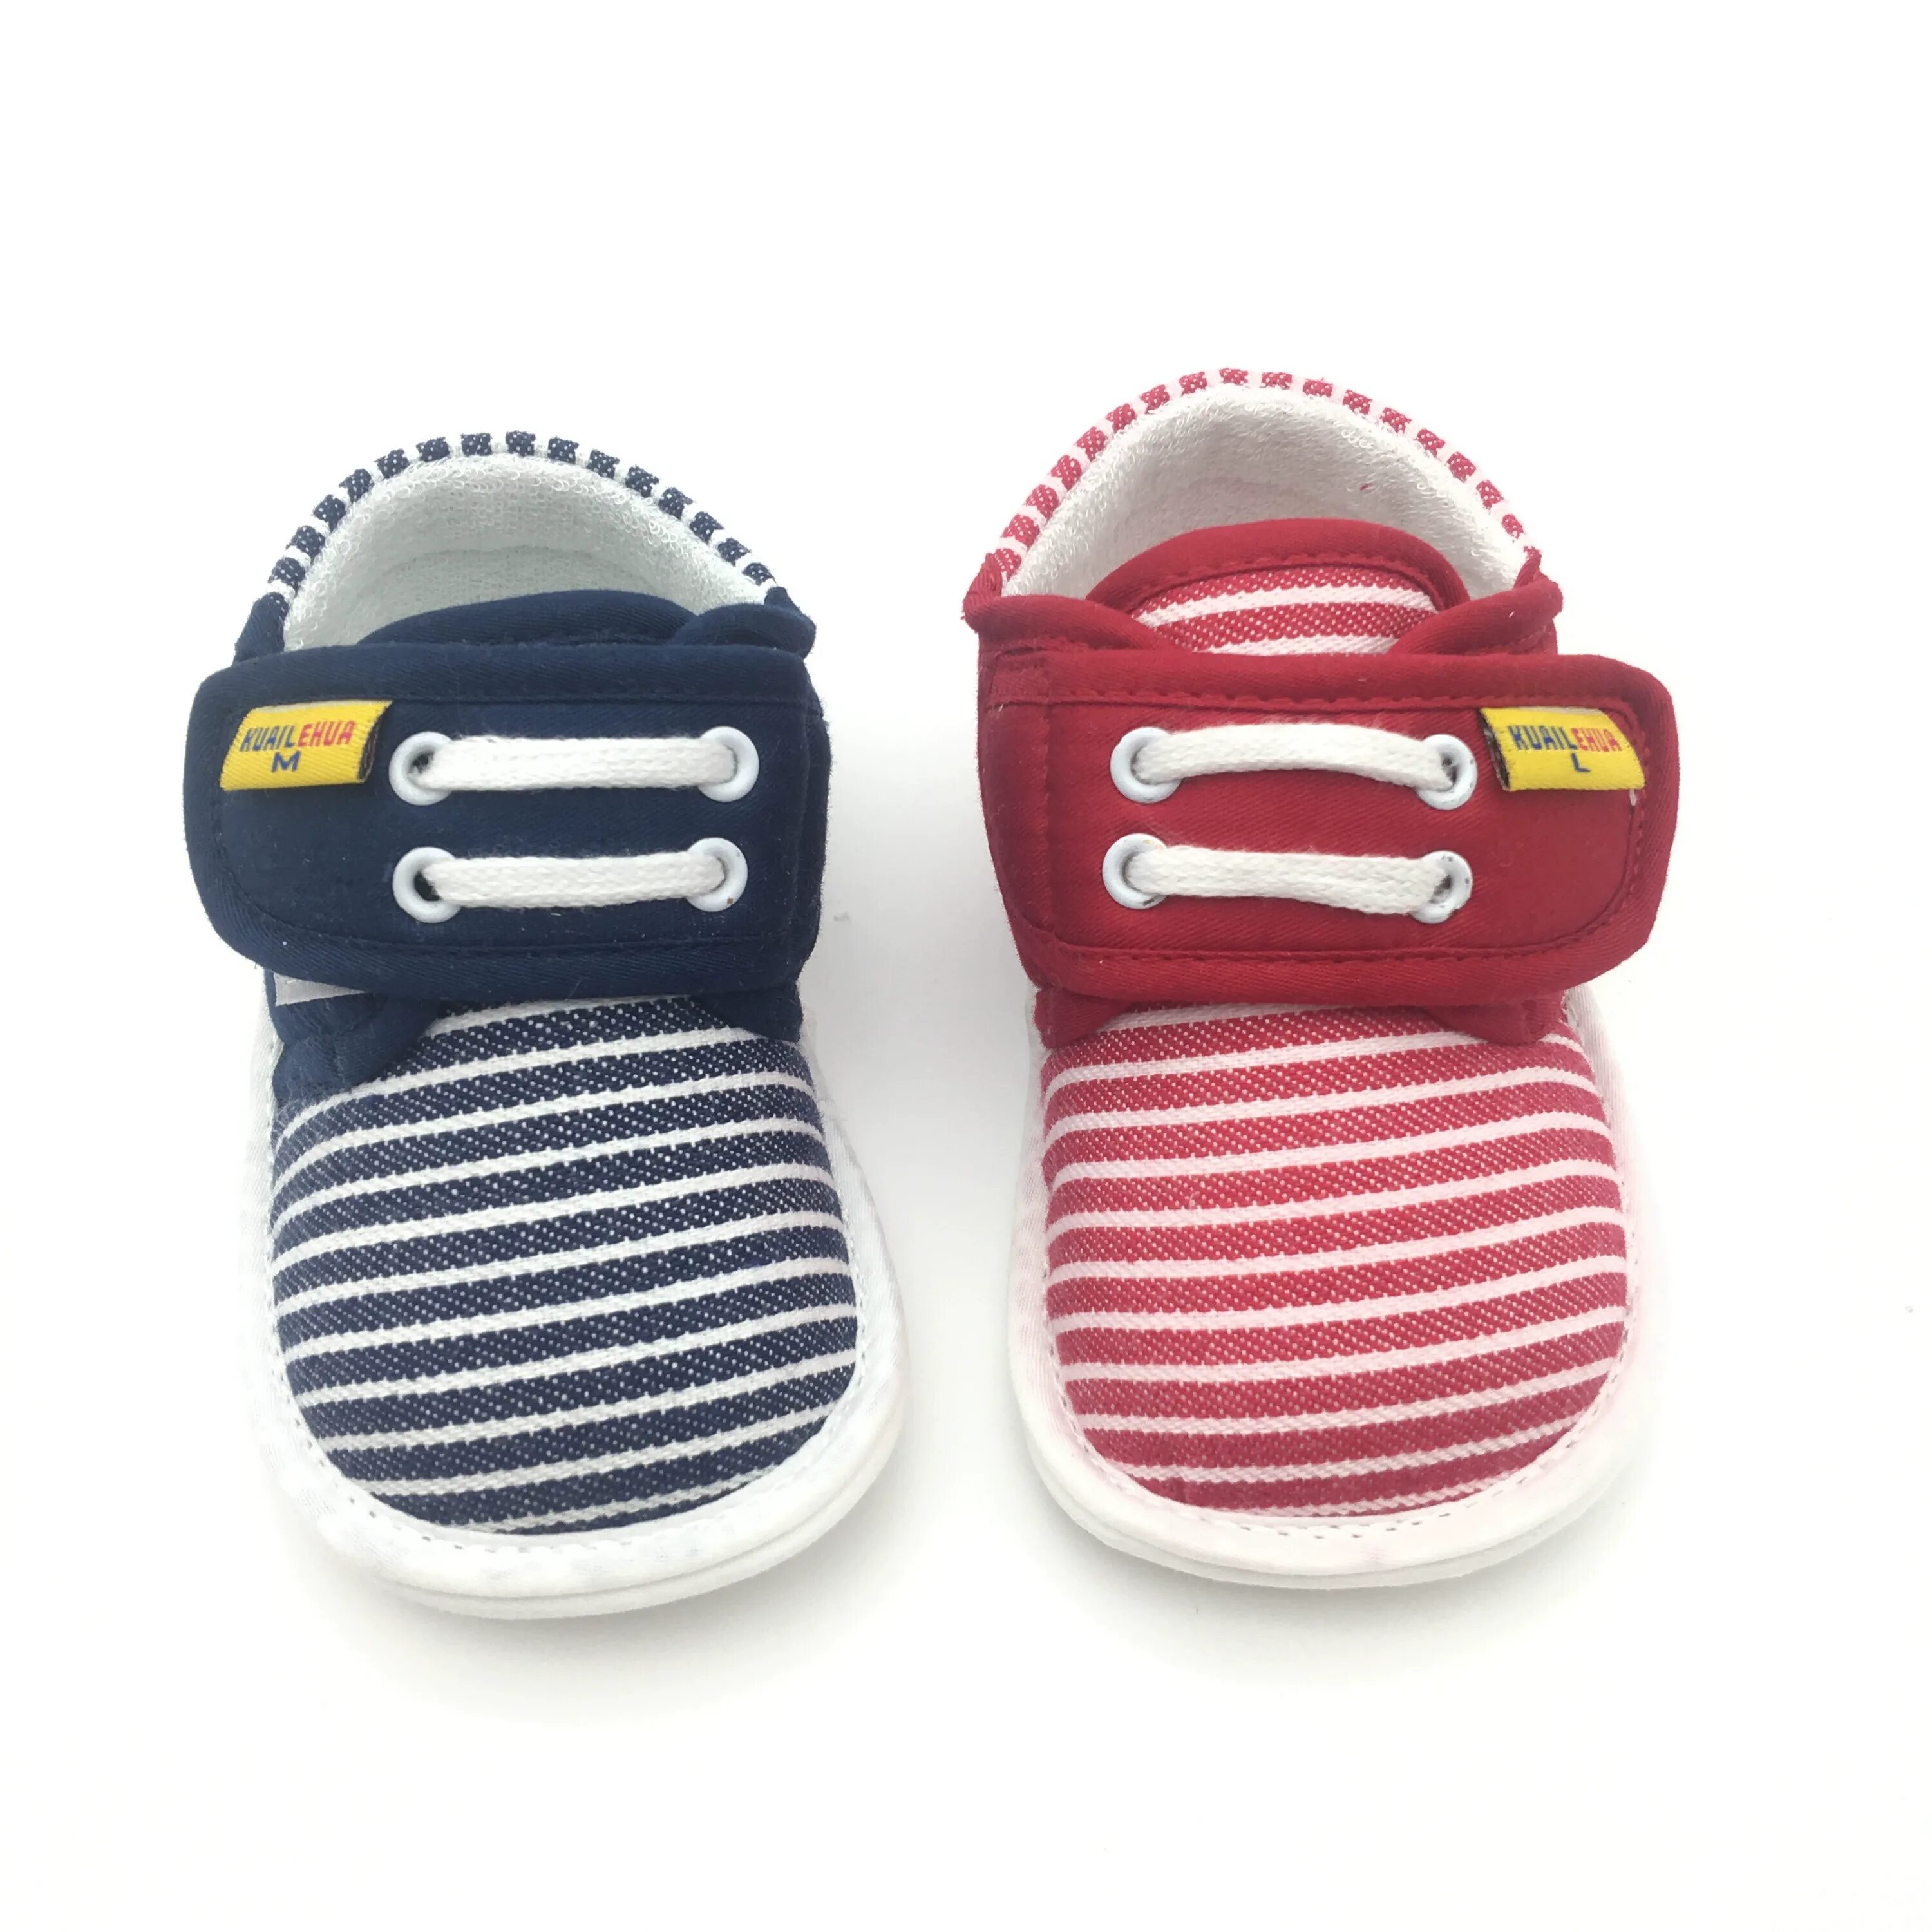 Лучшая обувь для малышей. Cesaro Rosso детская обувь. Слипы обувь детские. Модная детская обувь для малышей. Детская обувь на весну для новорожденных тапки.